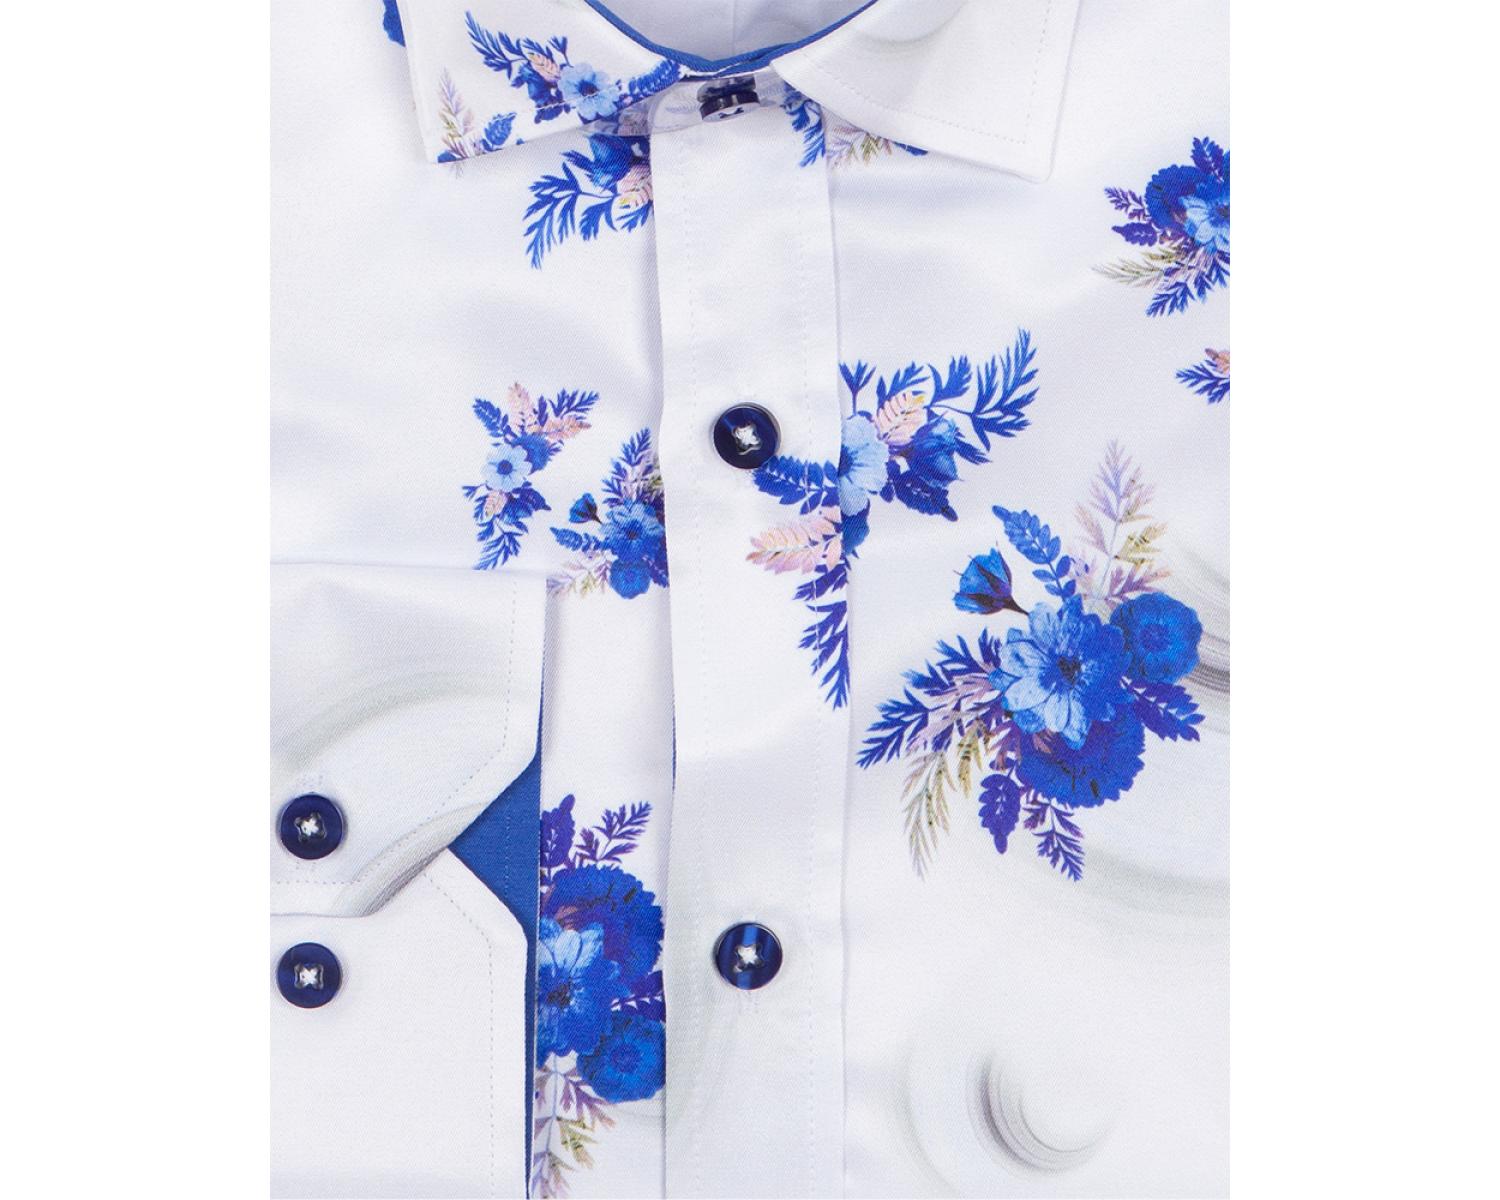 SL 6864 Men's & royal blue floral print long sleeved shirt - Quality Designed